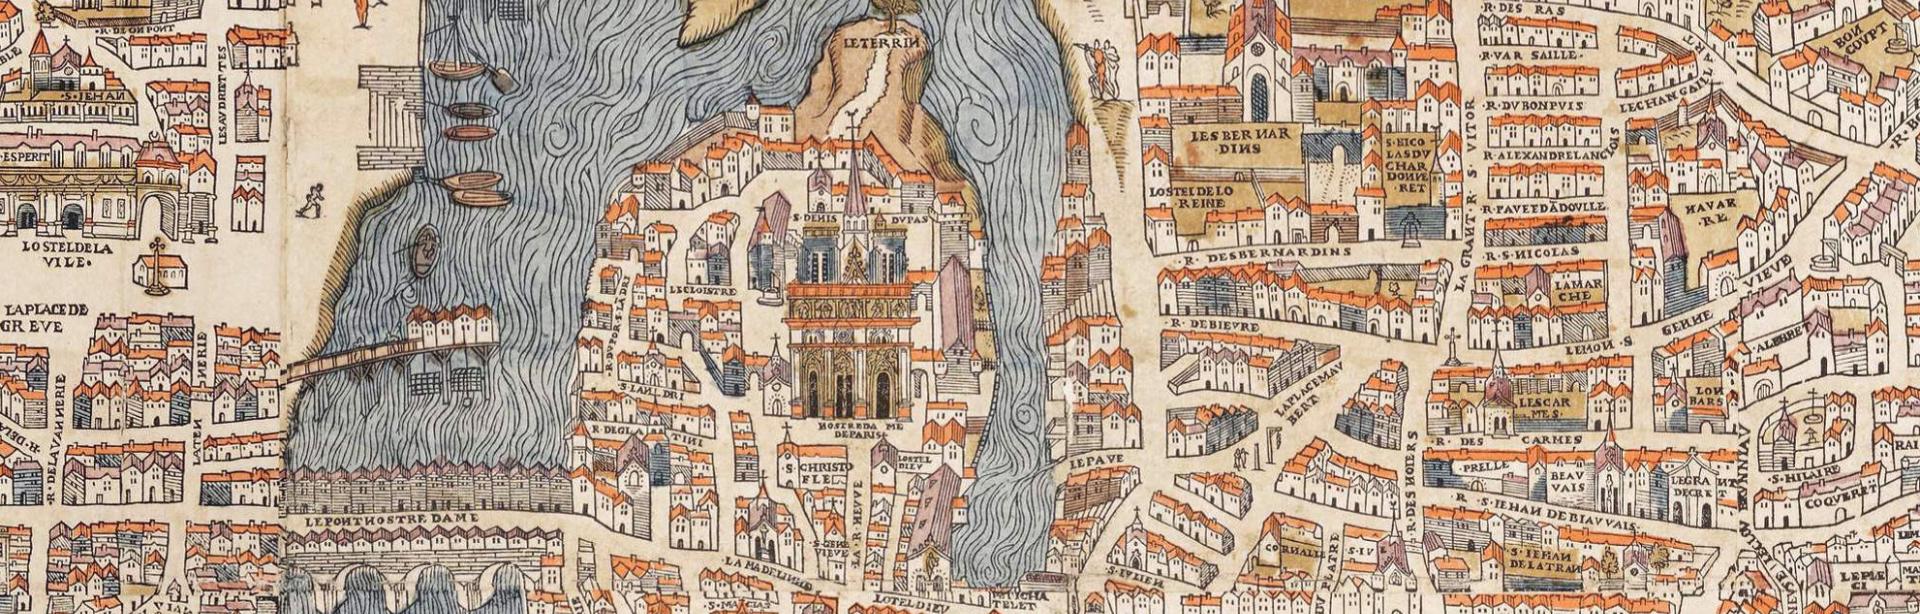 Olivier Truschet, Germain Hoyau, Plan de Paris (vers 1550) © Domaine public, Wikimedia Commons